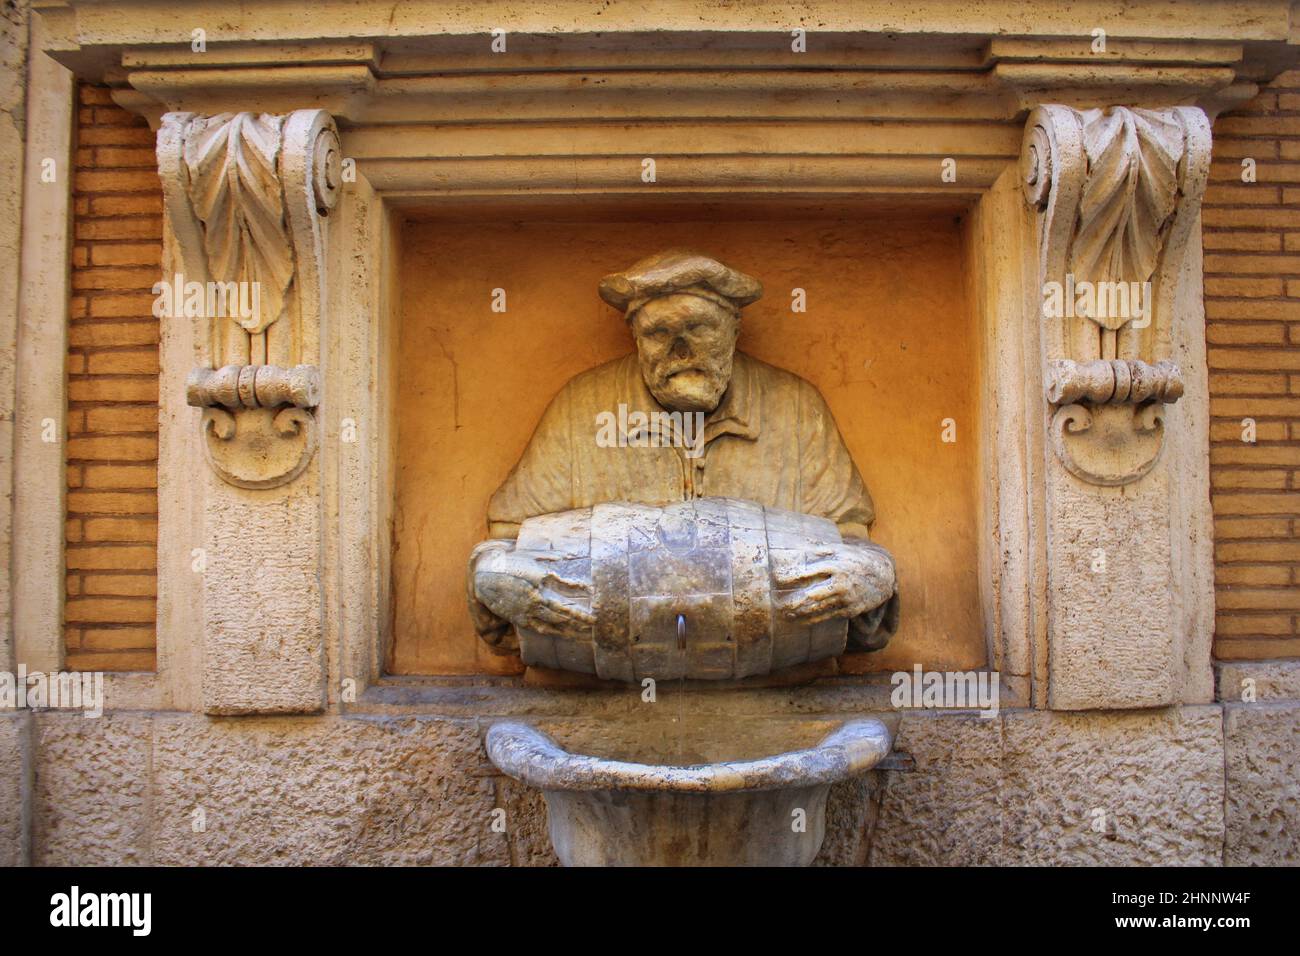 Rom, Italien, 28. Dezember 2018: Statue eines alten Mannes gießt Wasser aus einem Fass verwendet als Brunnen den Spitznamen "The Porter". Es war im Jahre 1580 gemacht und als Website satirischen Schriften zu veröffentlichen. Stockfoto